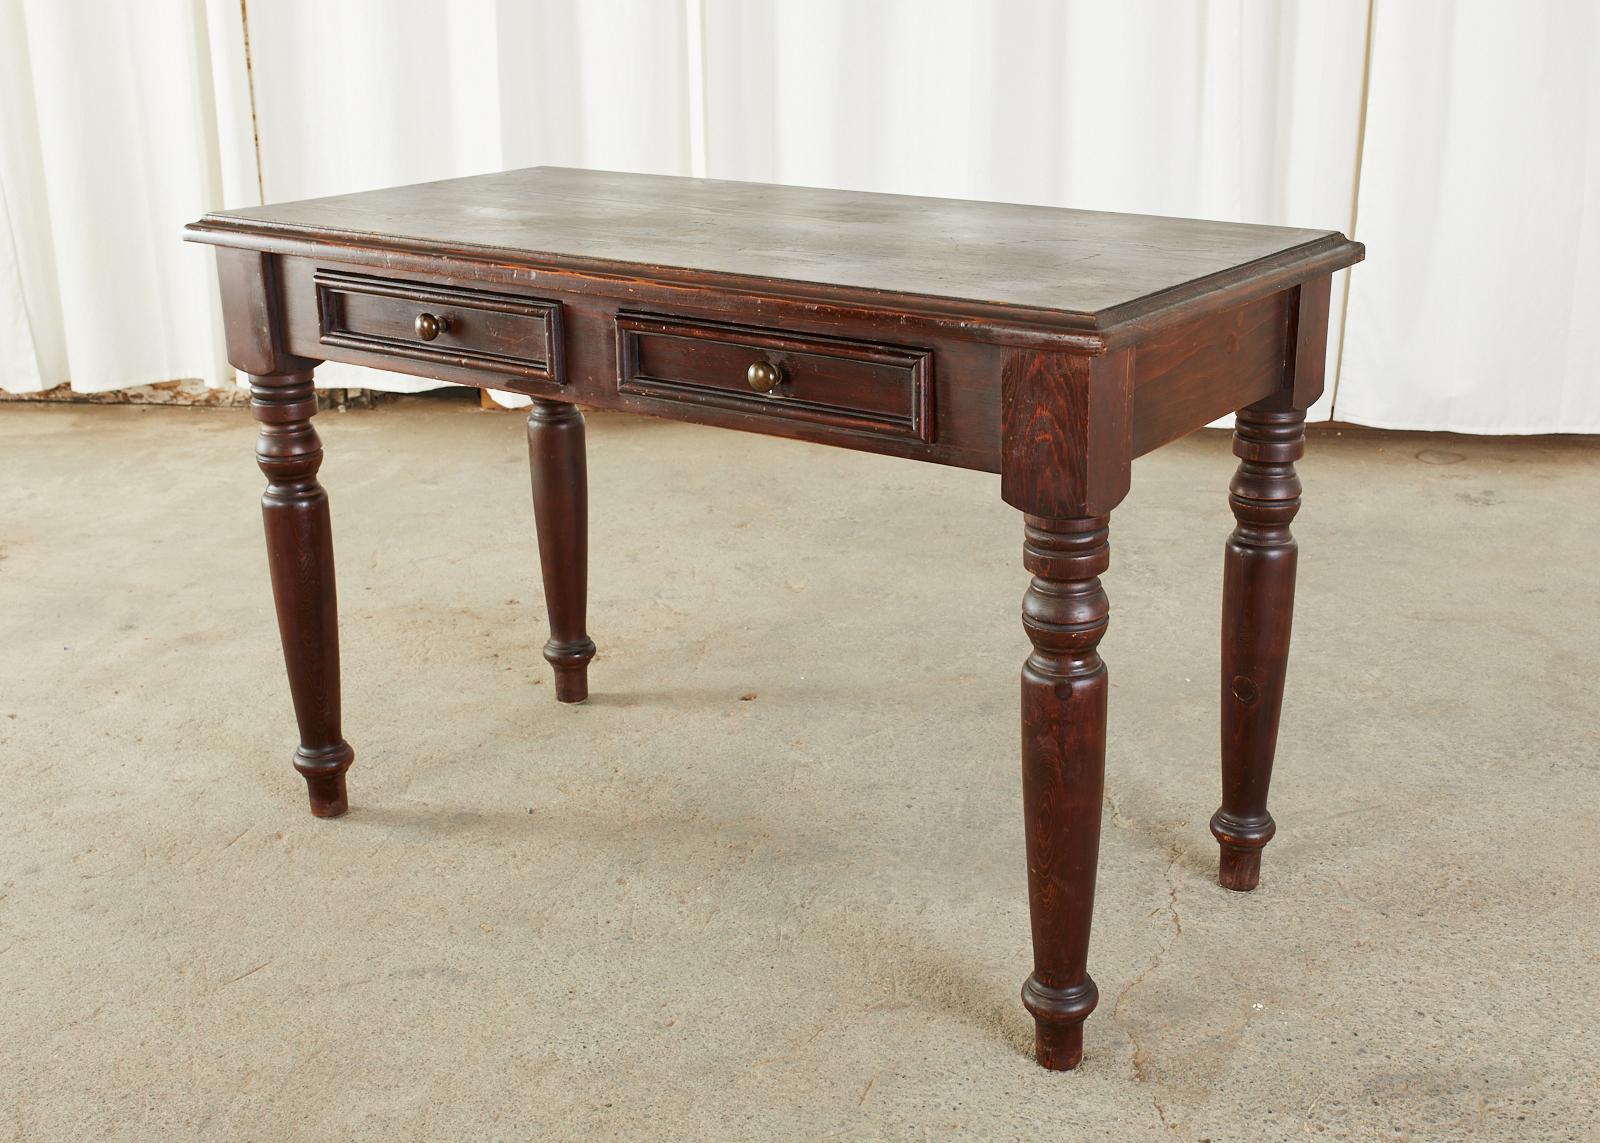 English Edwardian Style Turned Leg Pine Writing Table Desk 1